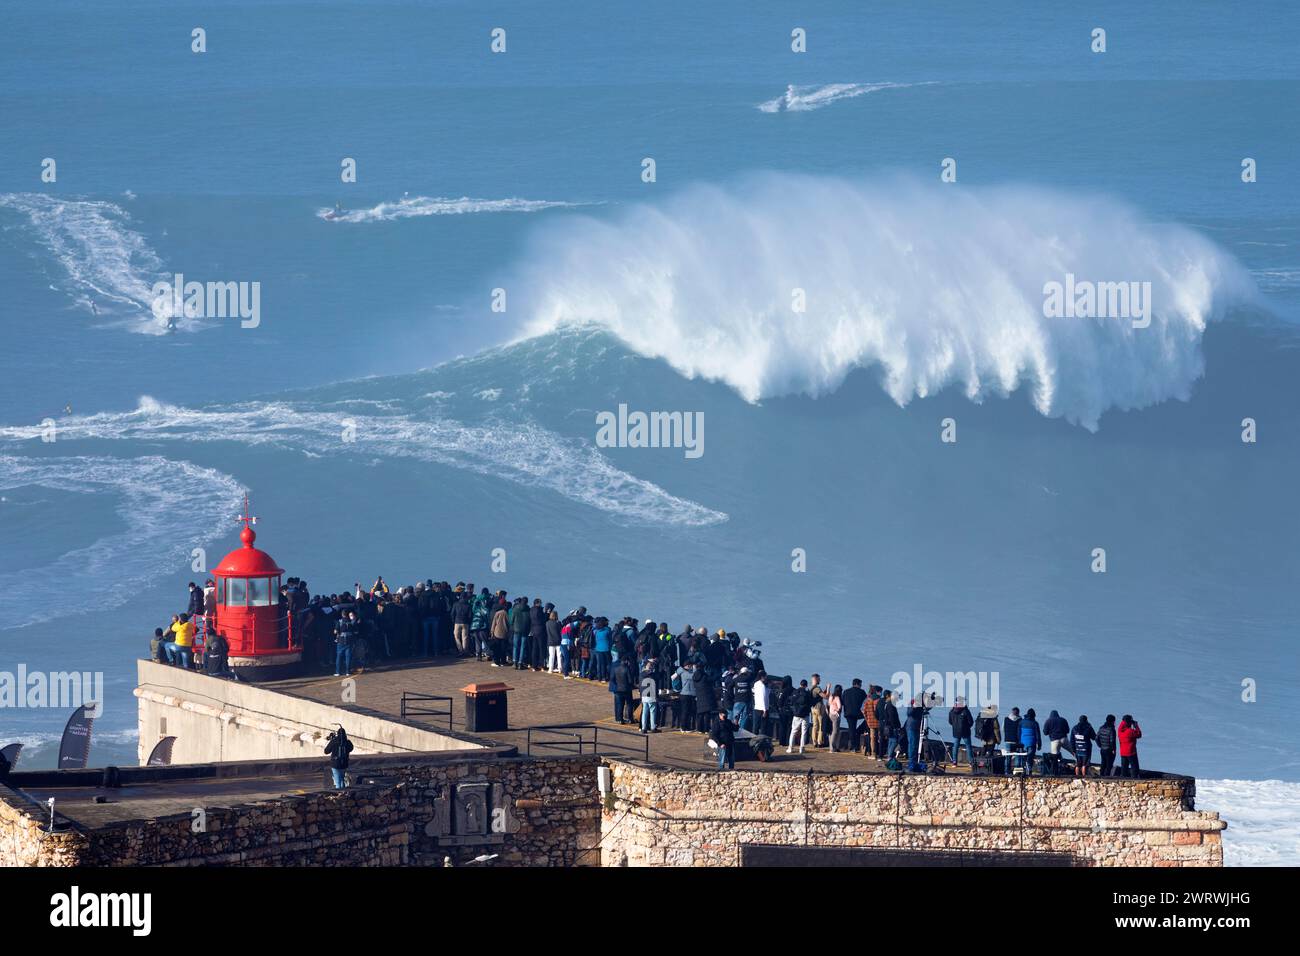 Europa, Portogallo, regione di Oeste, Nazaré, folla che guarda le enormi onde da Forte de Sao Miguel Arcanjo durante il Free Surfing Event 2022 Foto Stock